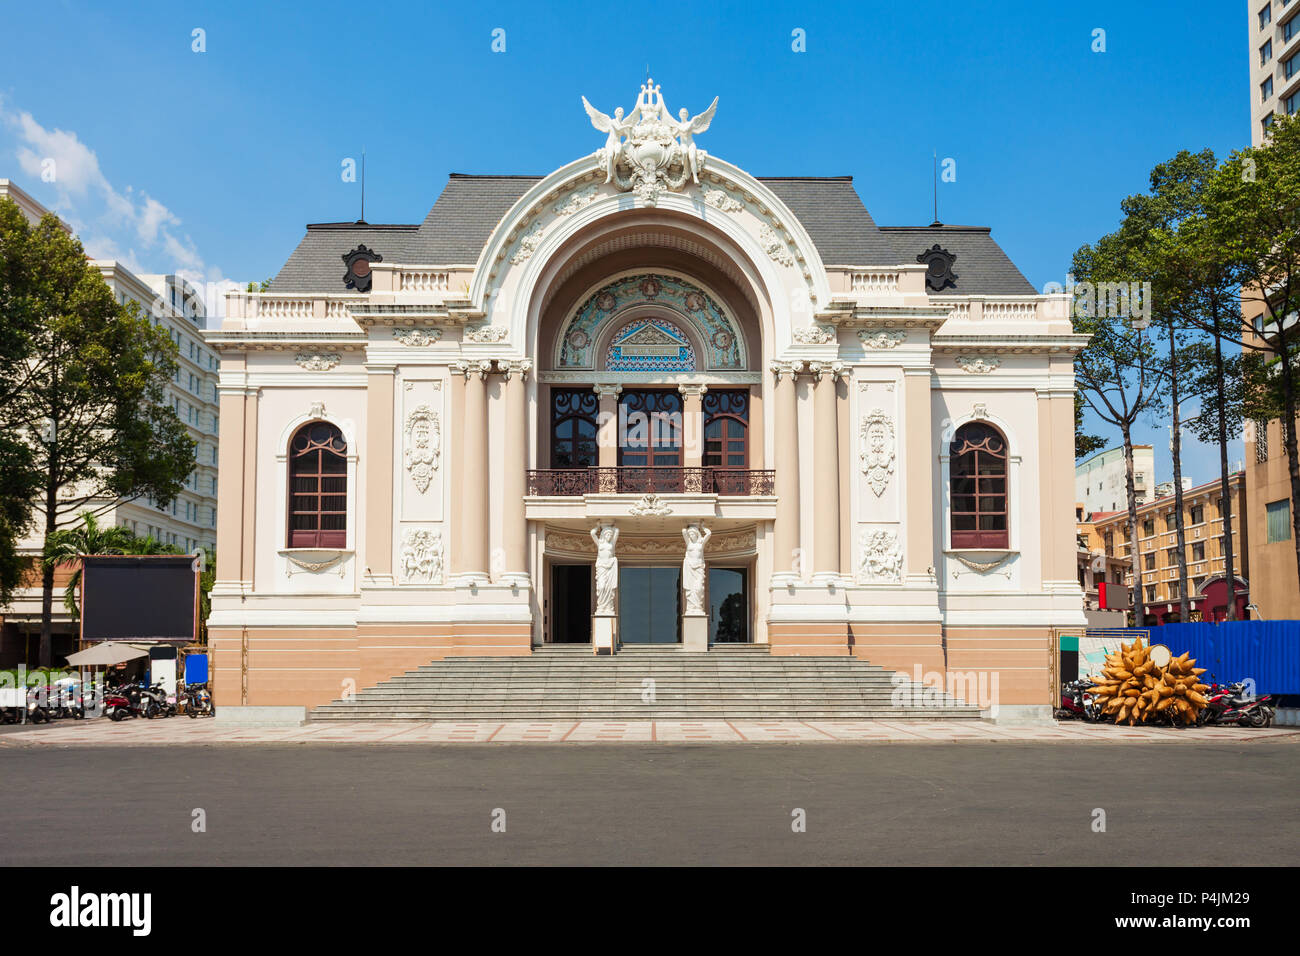 Das Stadttheater von Ho Chi Minh City oder Saigon Opernhaus ein Opernhaus in Ho Chi Minh City in Vietnam. Stockfoto